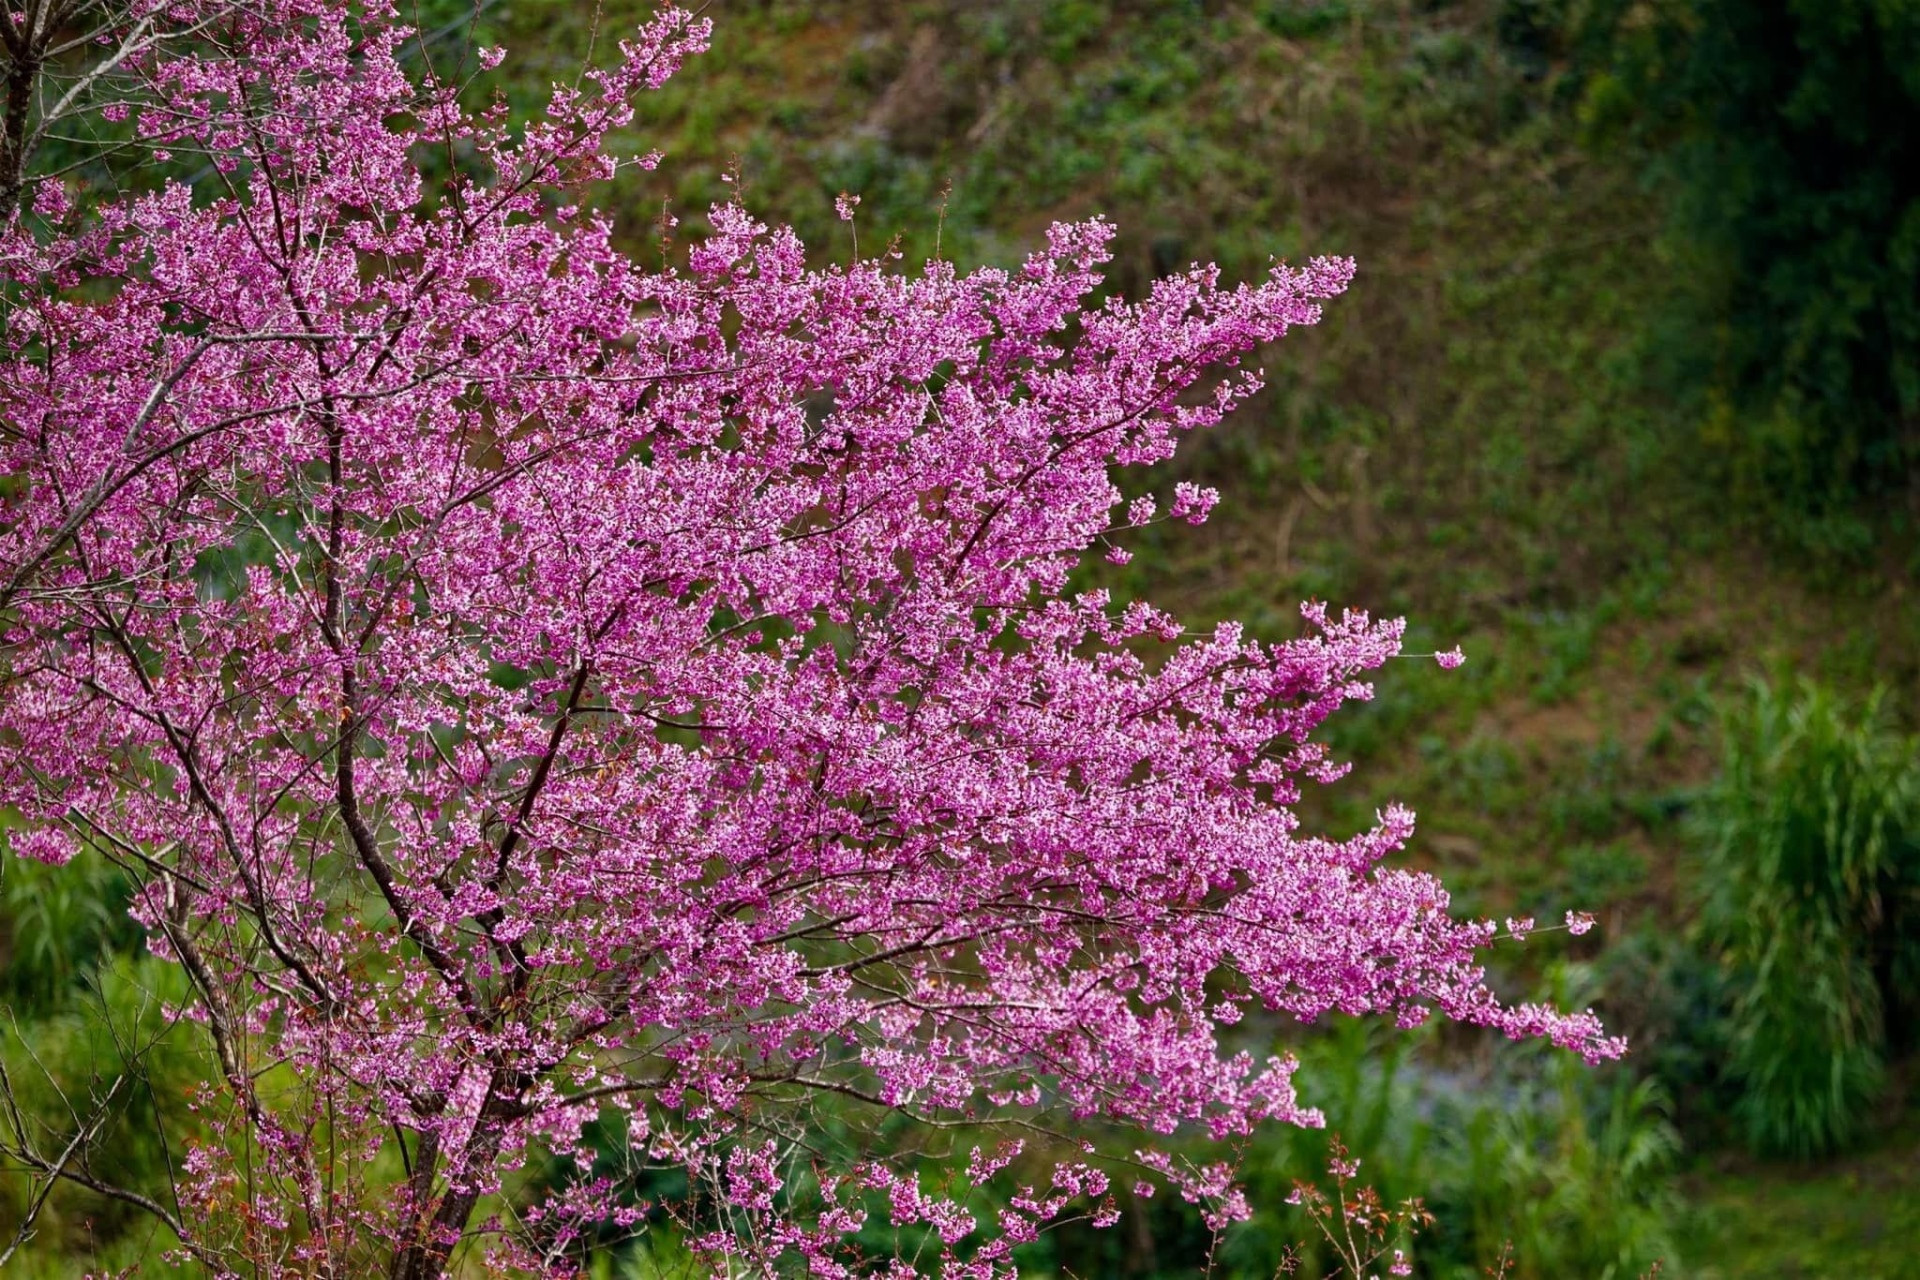 Chiêm ngưỡng sắc hoa tớ dày nhuộm hồng núi rừng Mù Cang Chải - 8